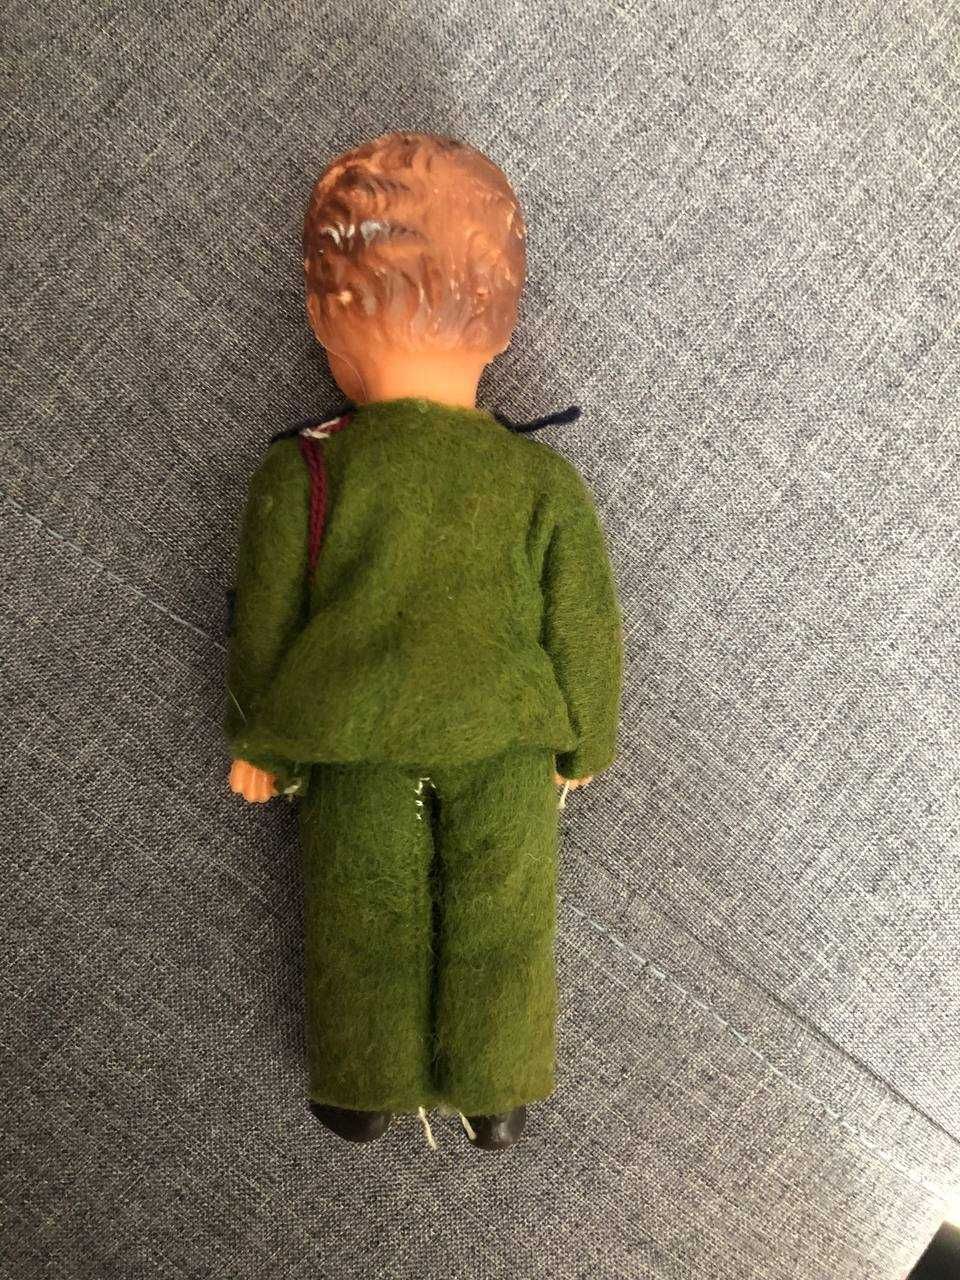 Вінтажна іграшка лялька хлопчик у фетровому костюмі вінтаж ГДР